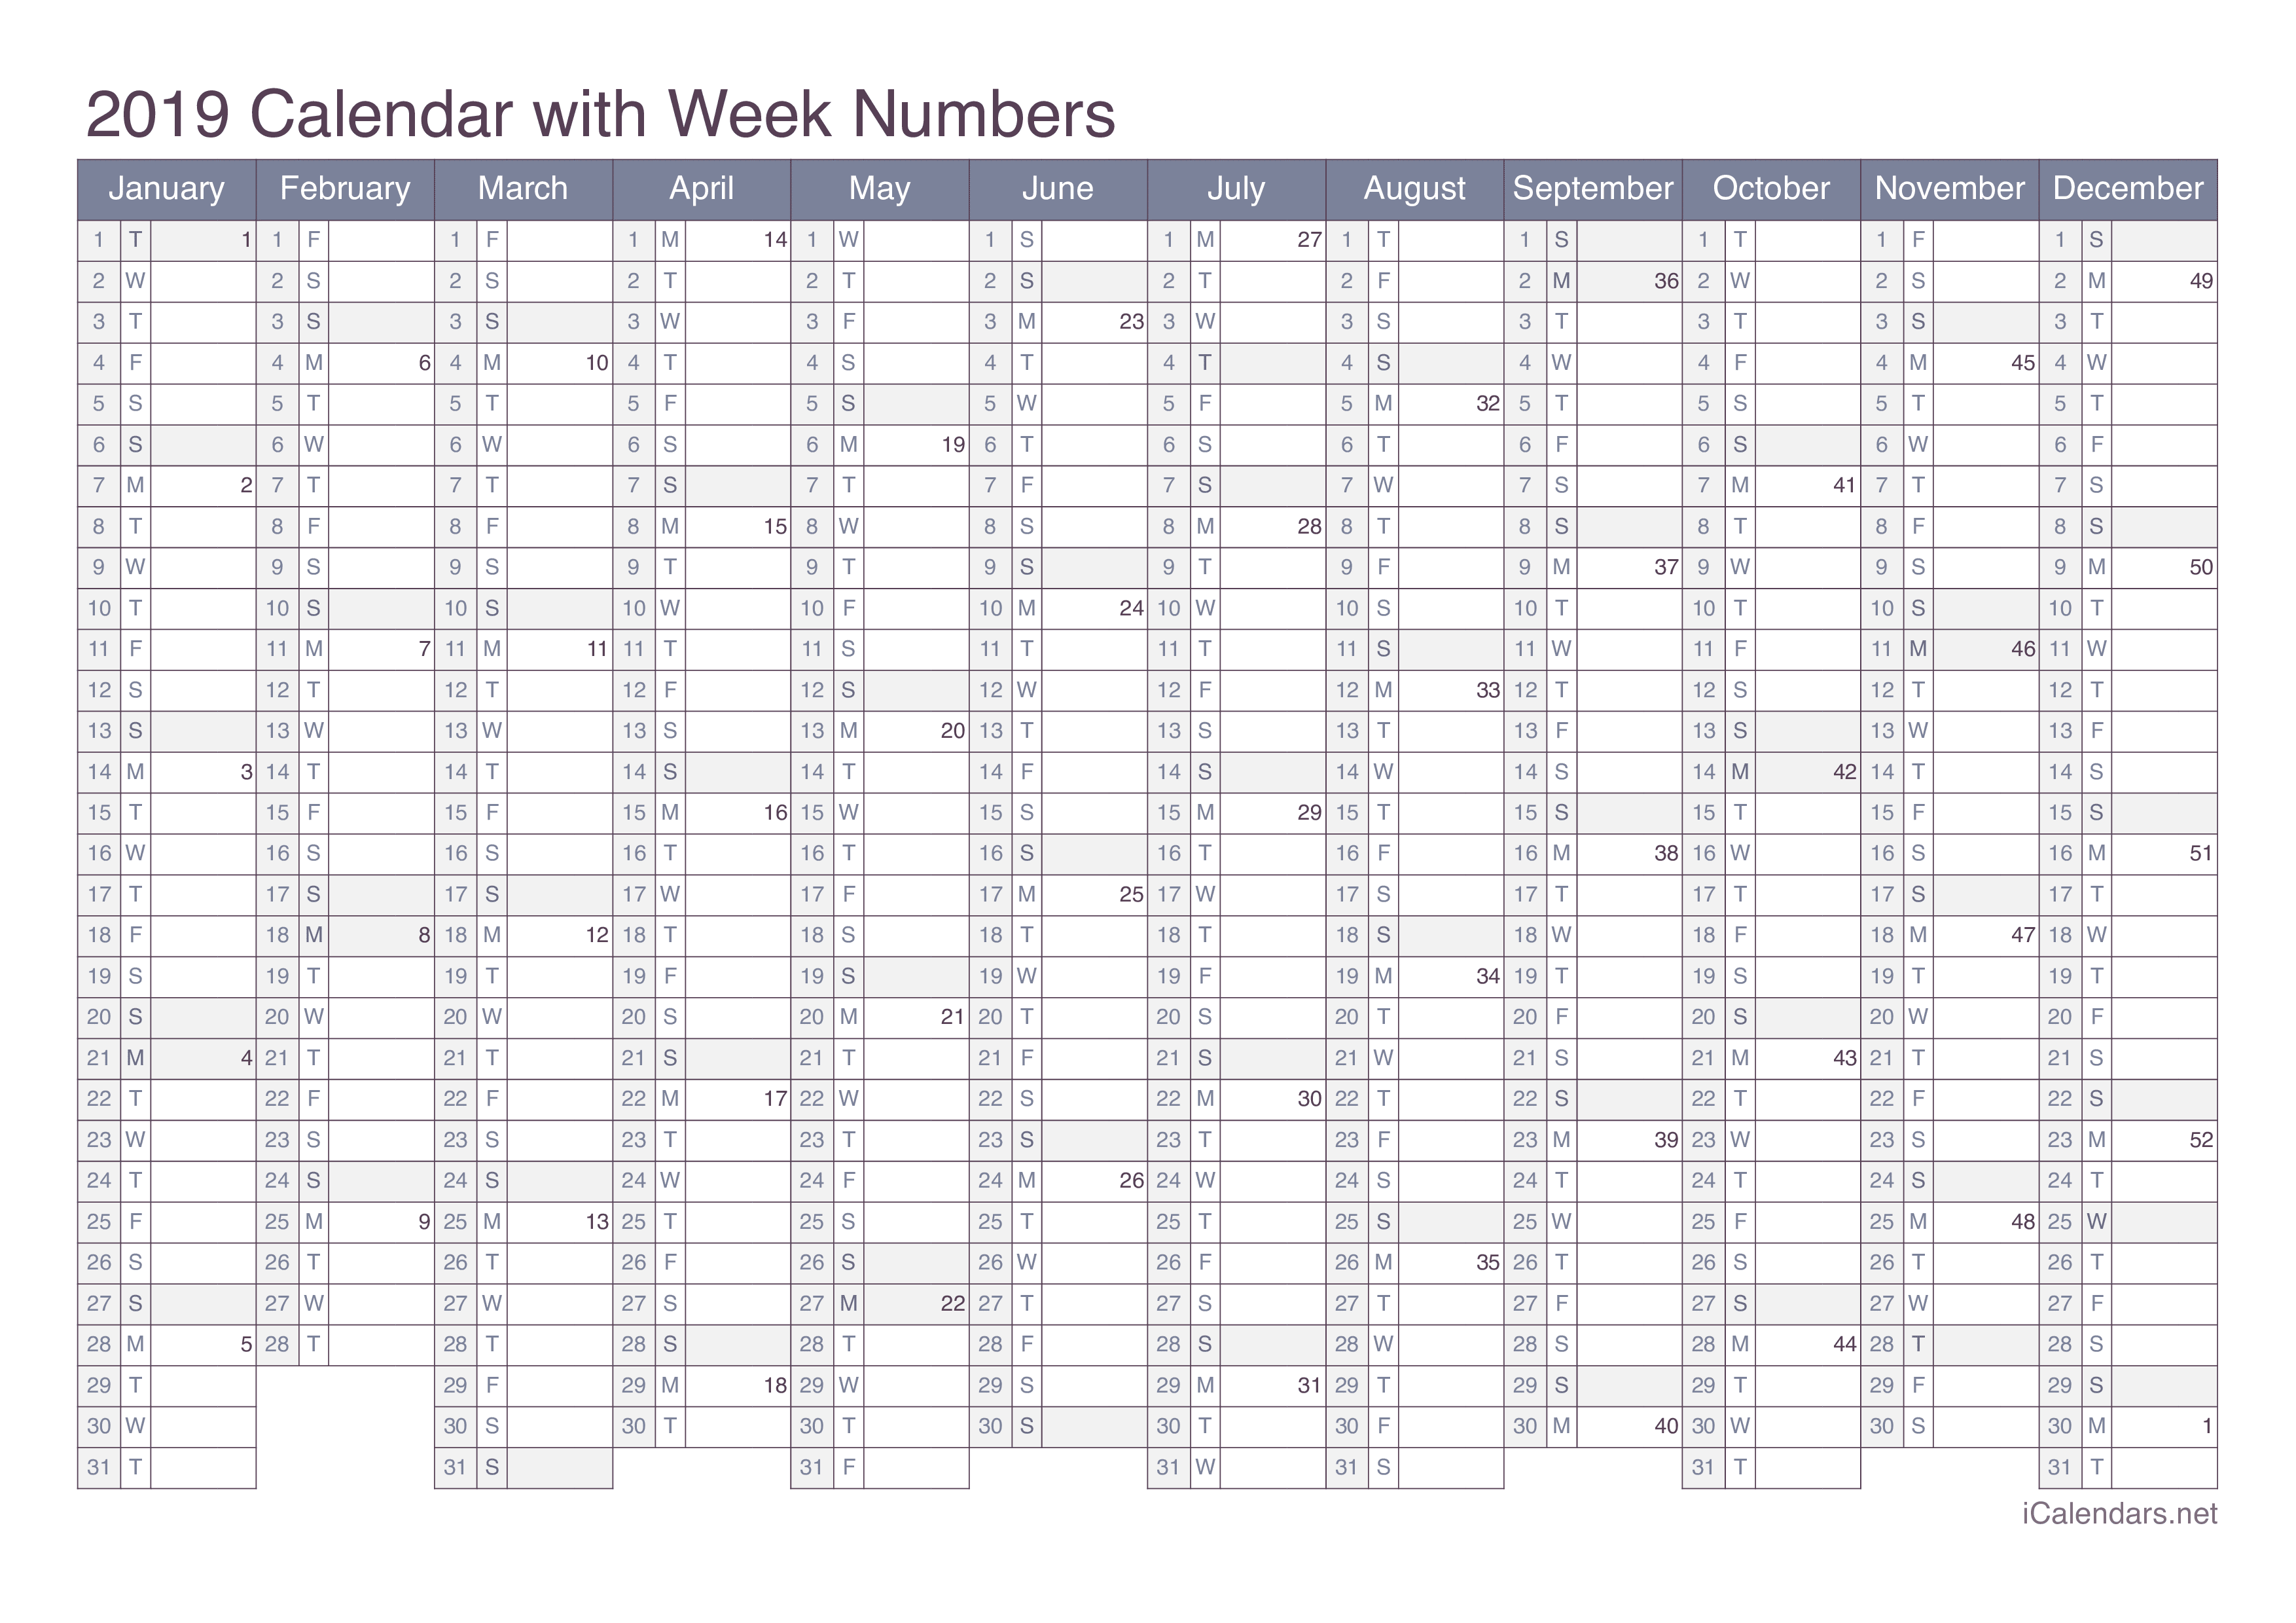 2019 Calendar with week numbers - Office